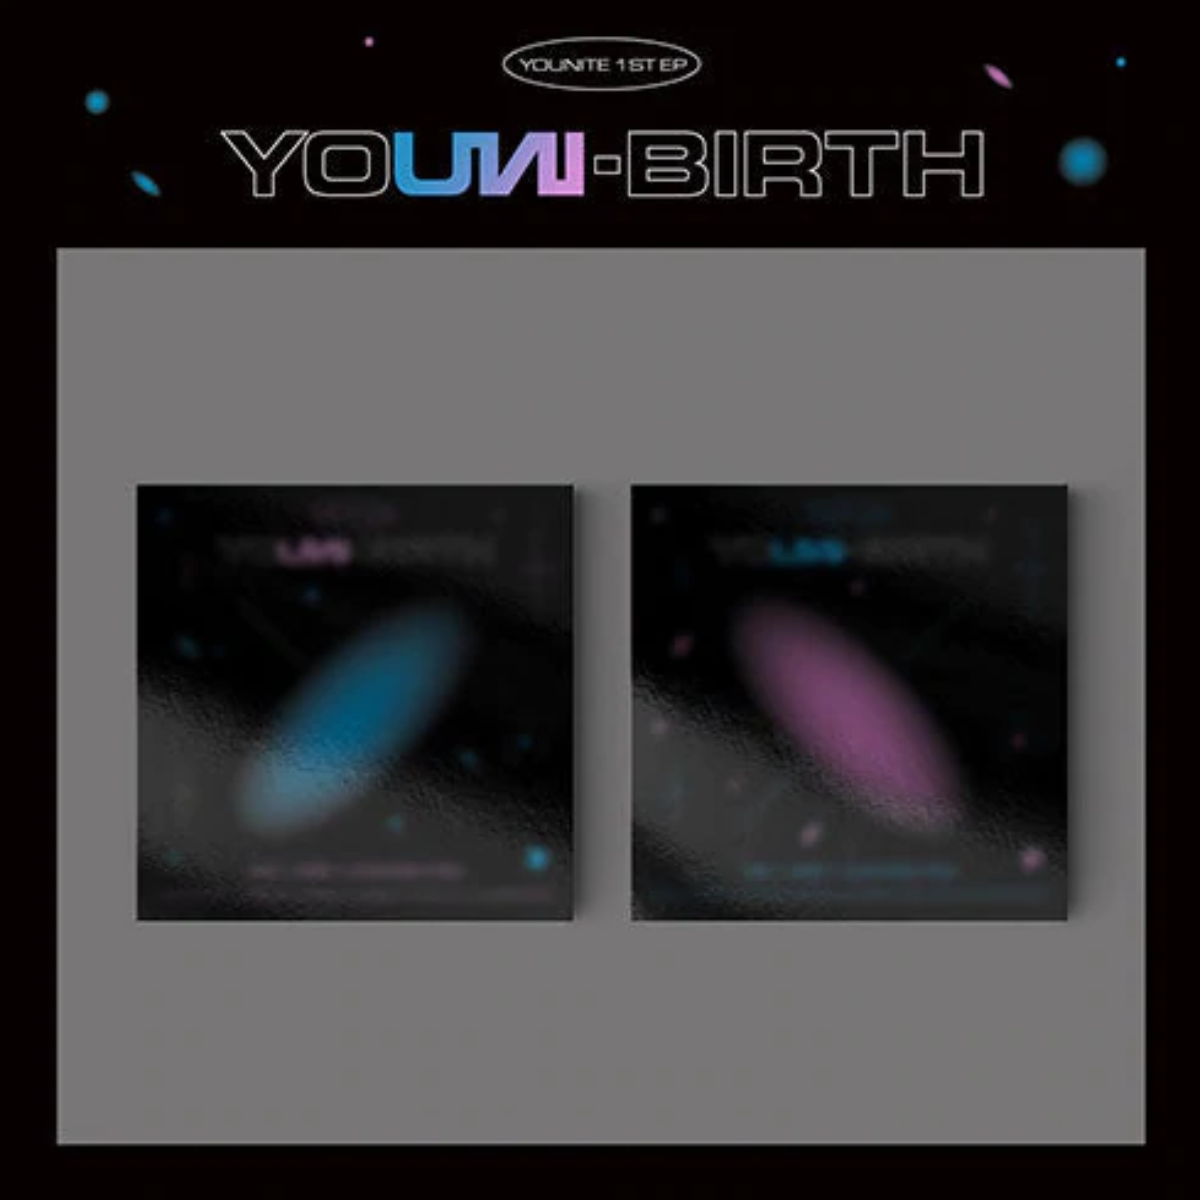 YOUNITE EP Album Vol. 1 - YOUNI-BIRTH